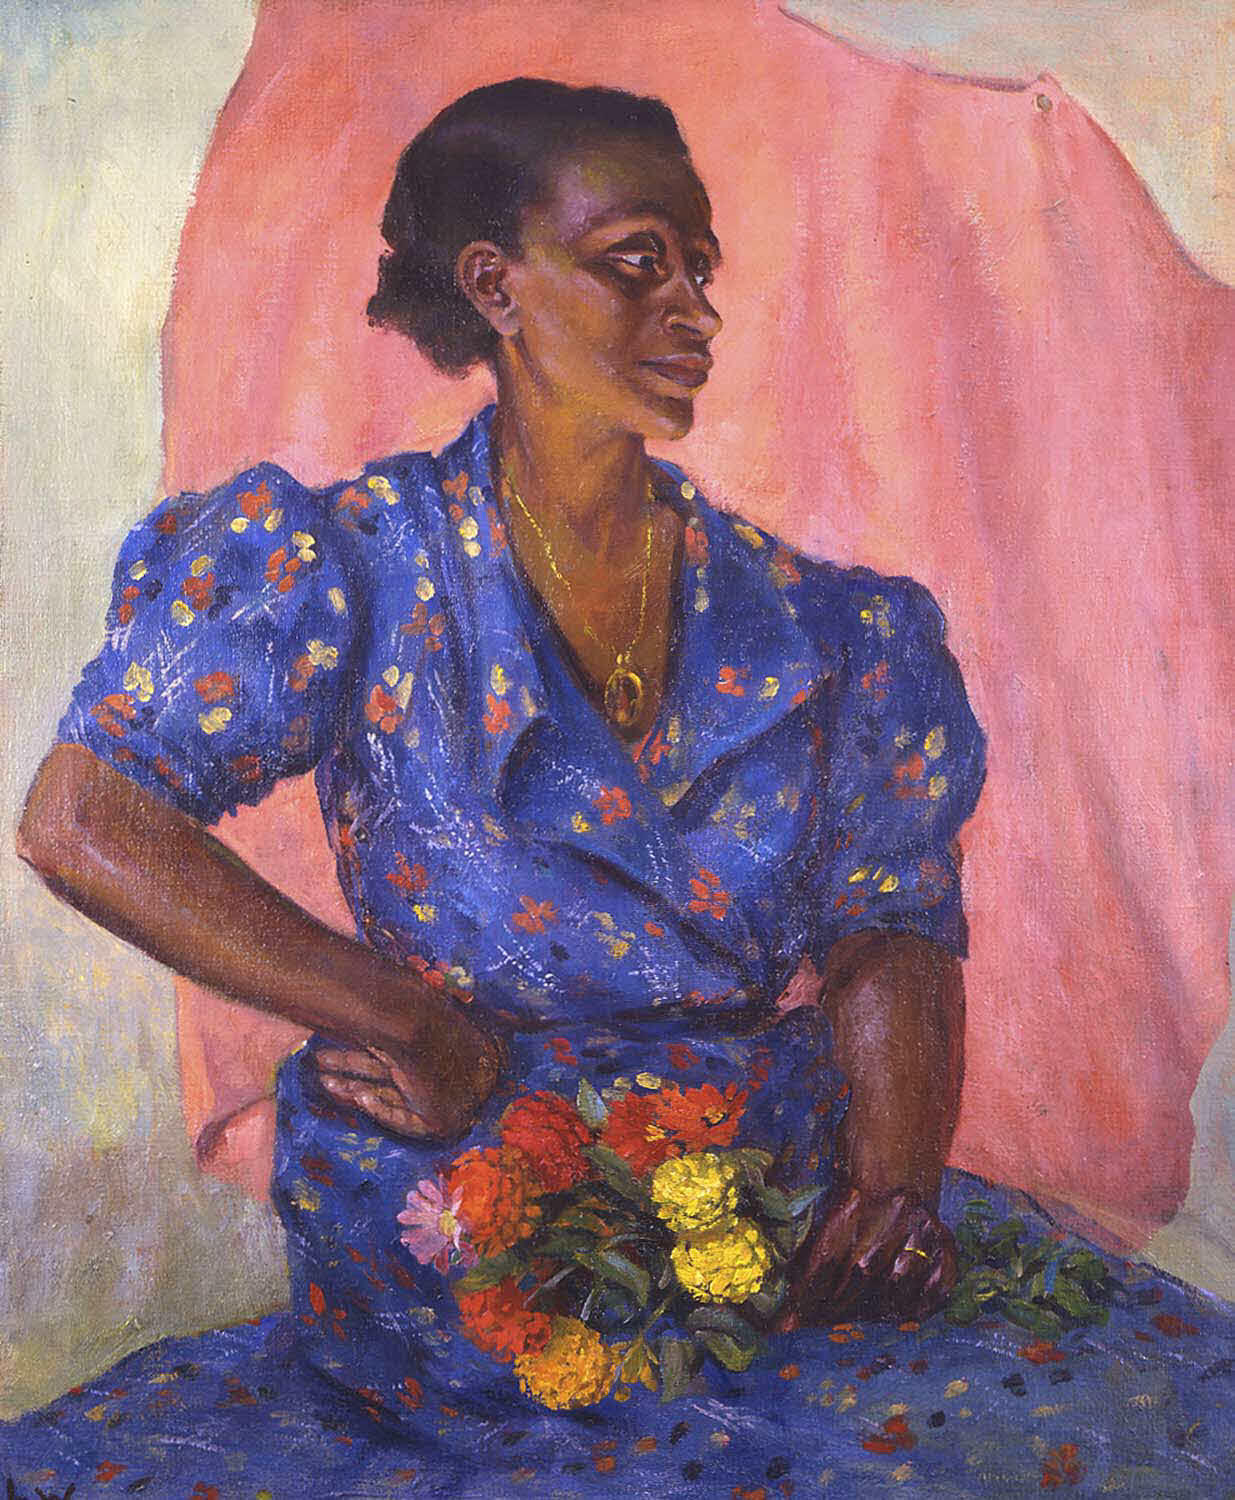 Femme au bouquet by Laura Wheeler Waring - v. 1940 - 76.2 x 63.5 cm Brooklyn Museum